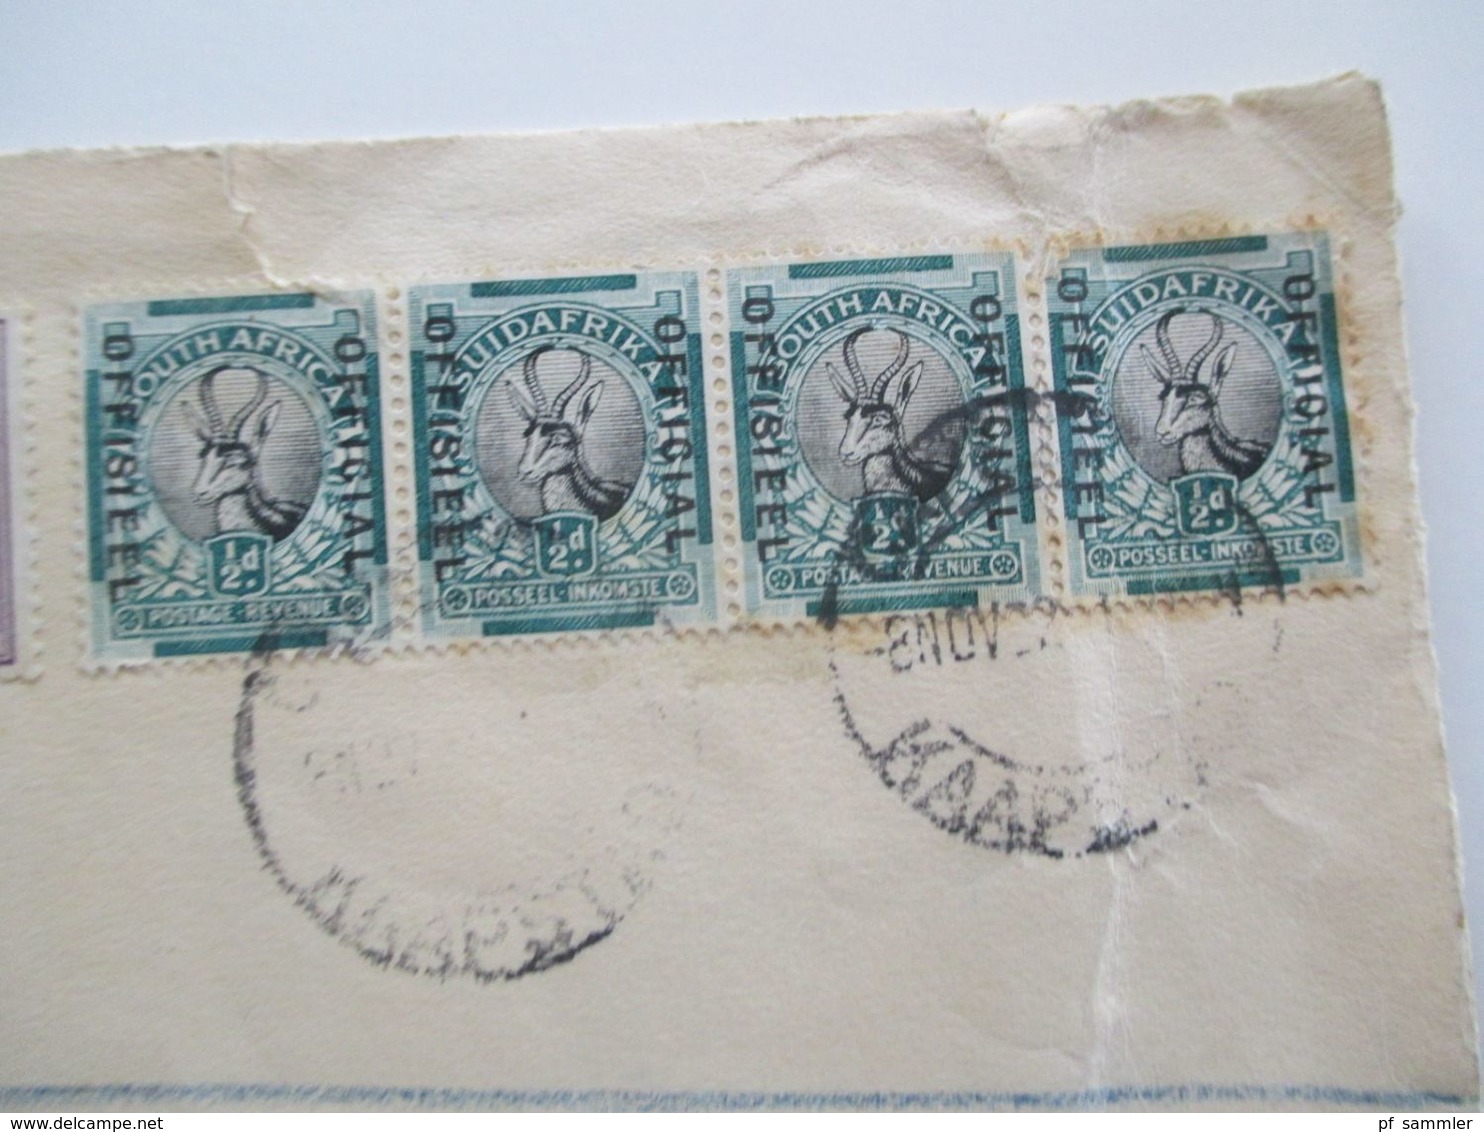 Südafrika 1932 Einschreiben registered letter Capetown - Pretoria Marken mit Aufdruck Official / Offisieel